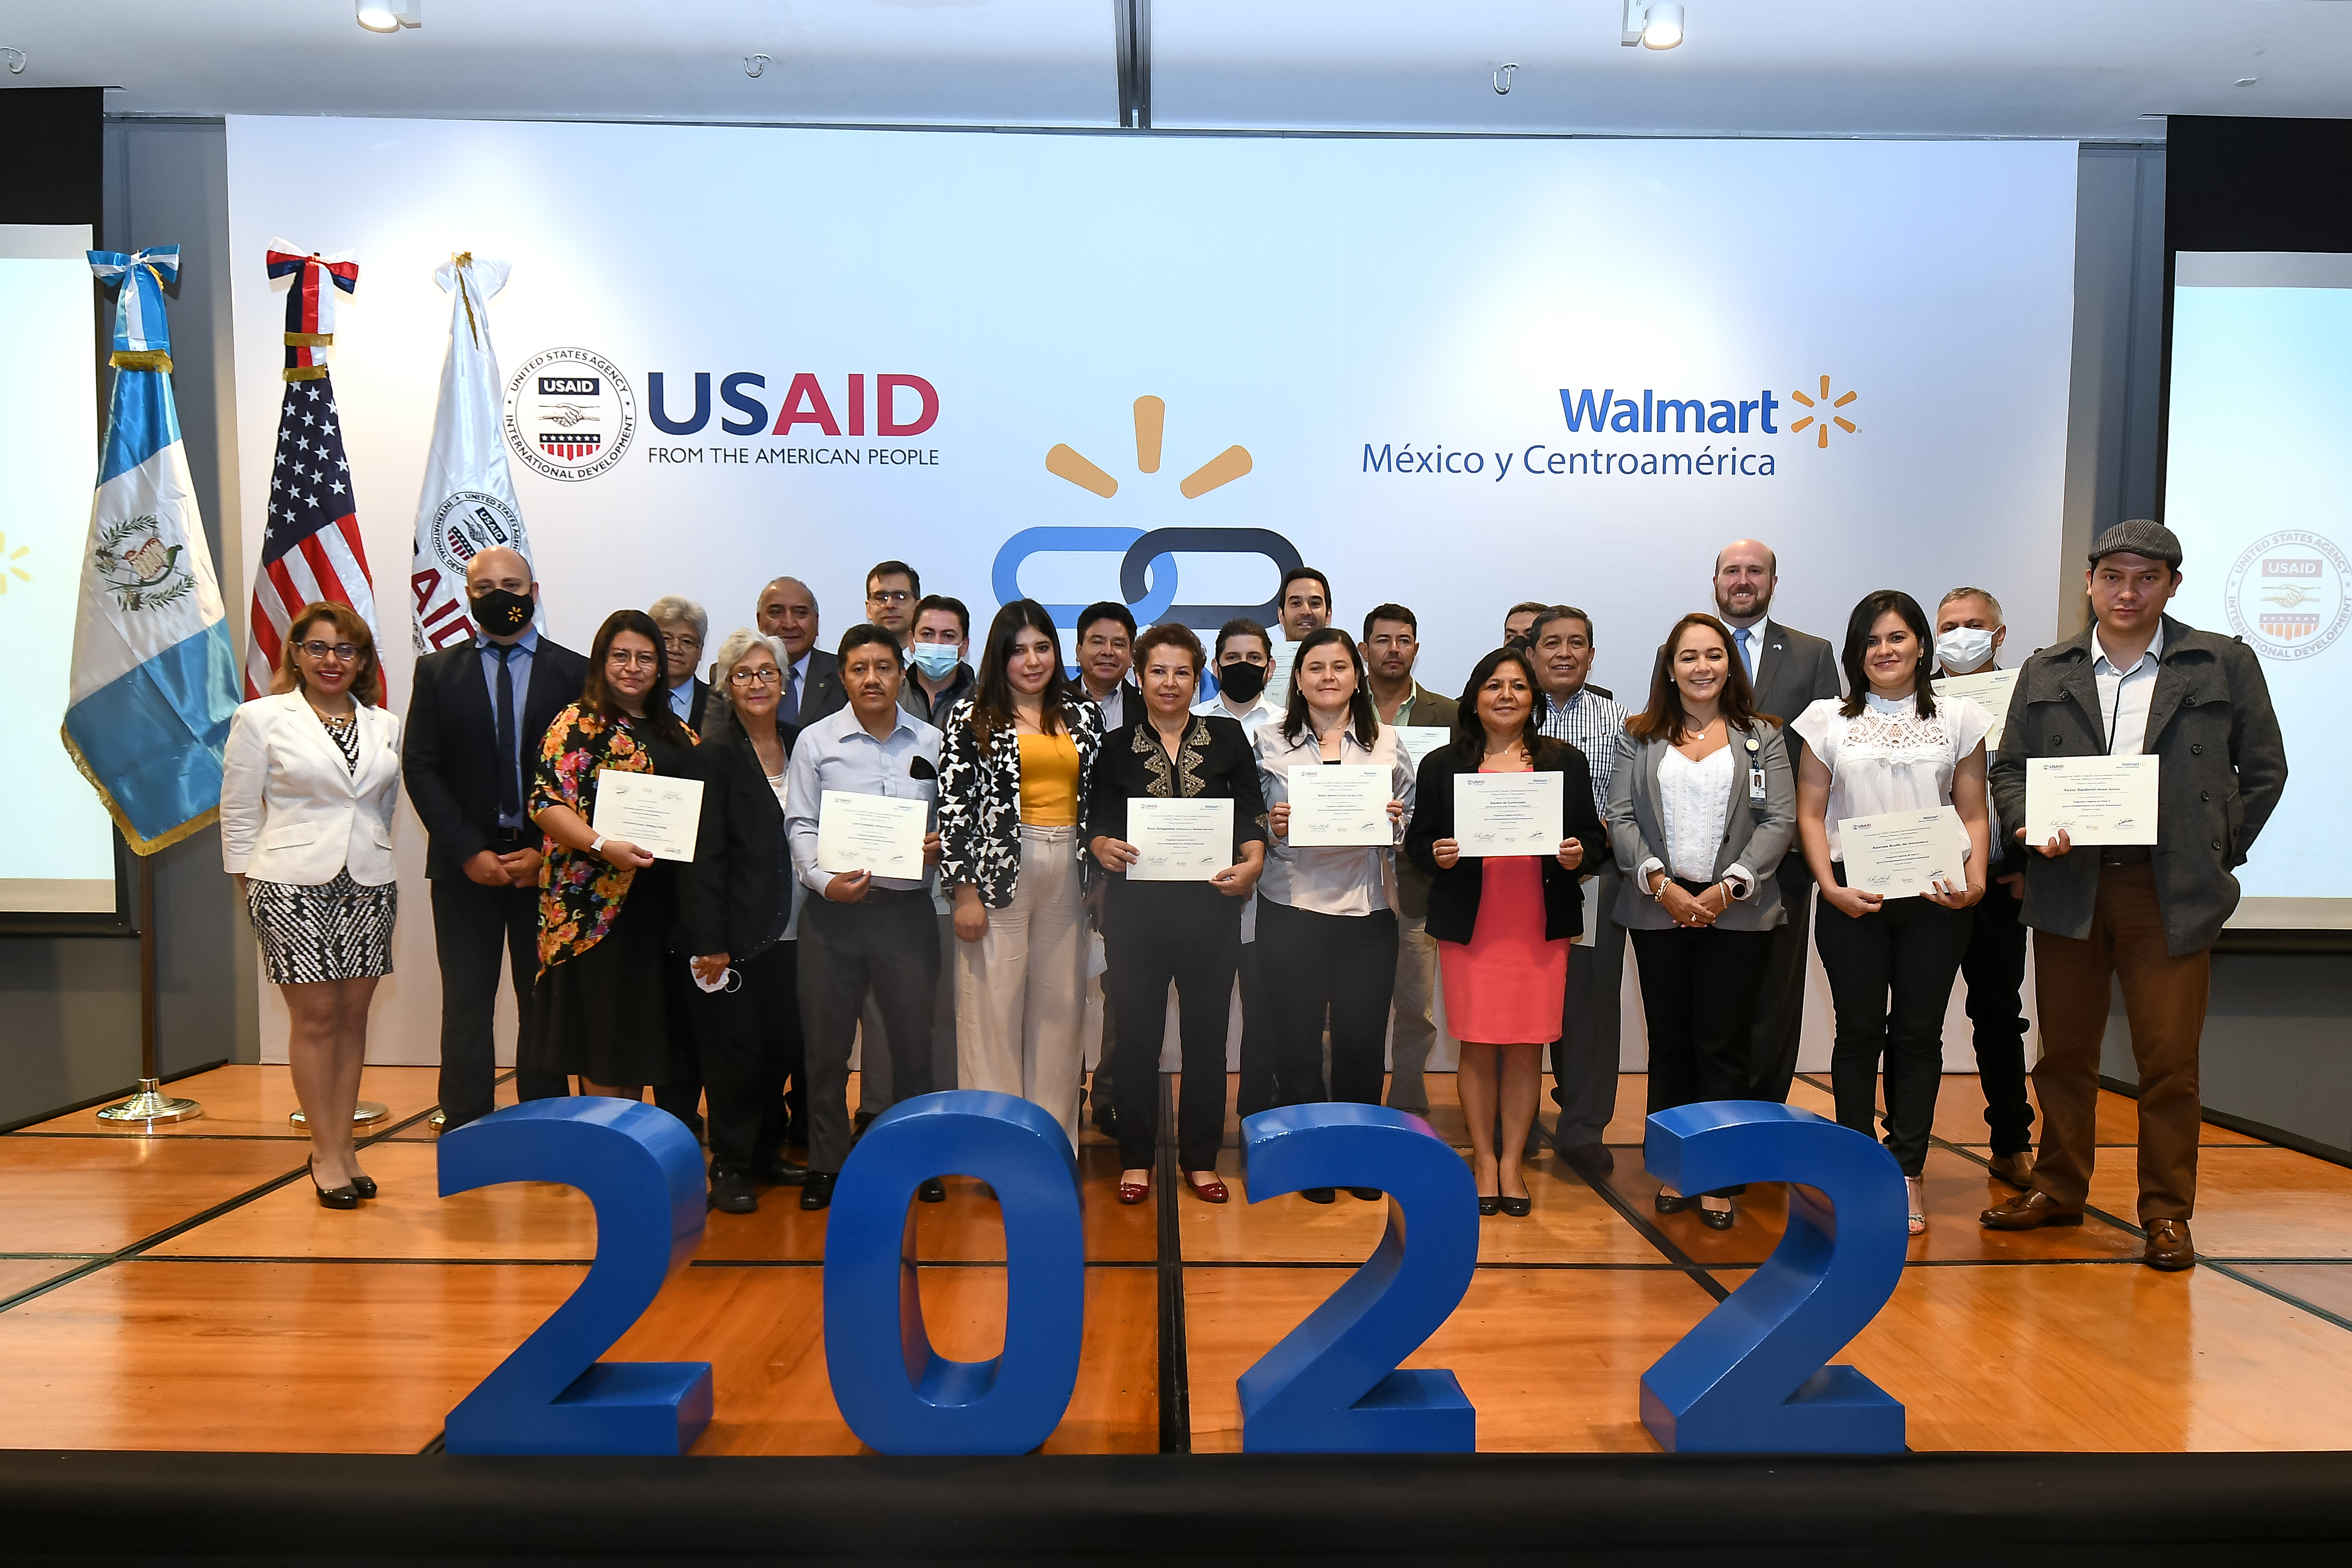 Los representantes de 18 empresas que finalizaron el curso recibieron su diploma de los ejecutivos de Walmart y Usaid. Foto Prensa Libre: Sergio Muñoz